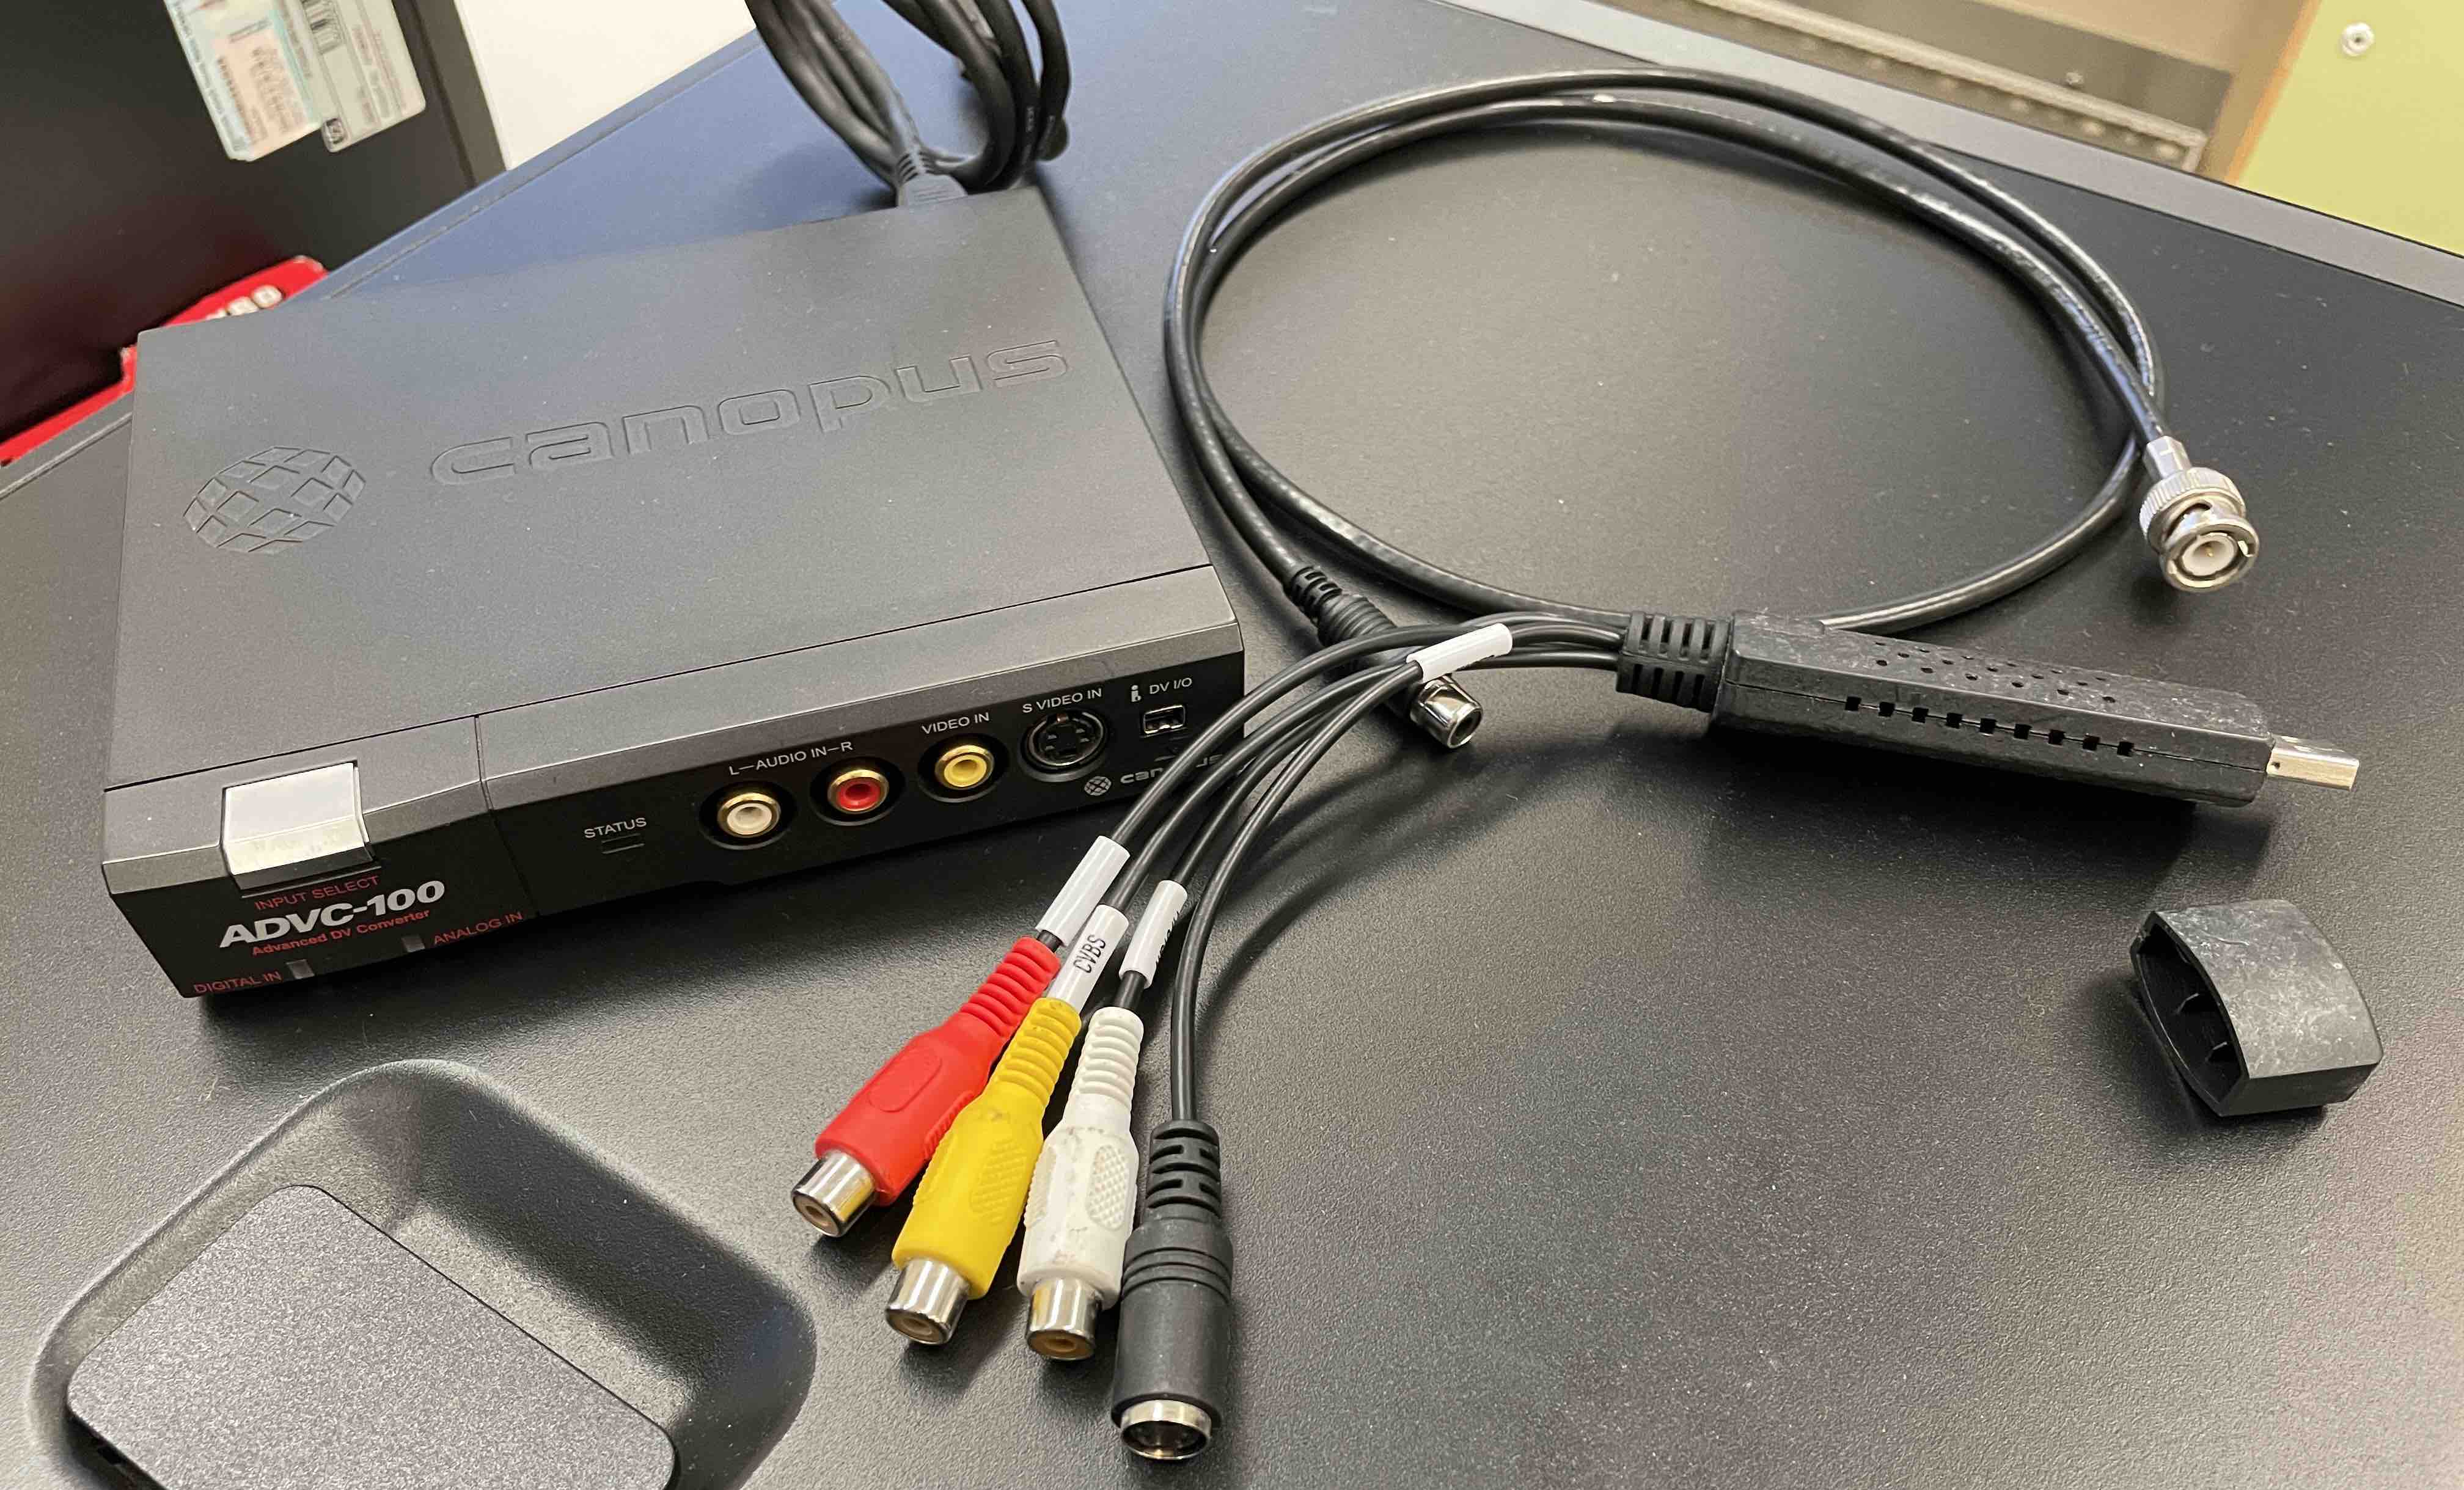 Capturadora Firewire 400 y USB 2.0